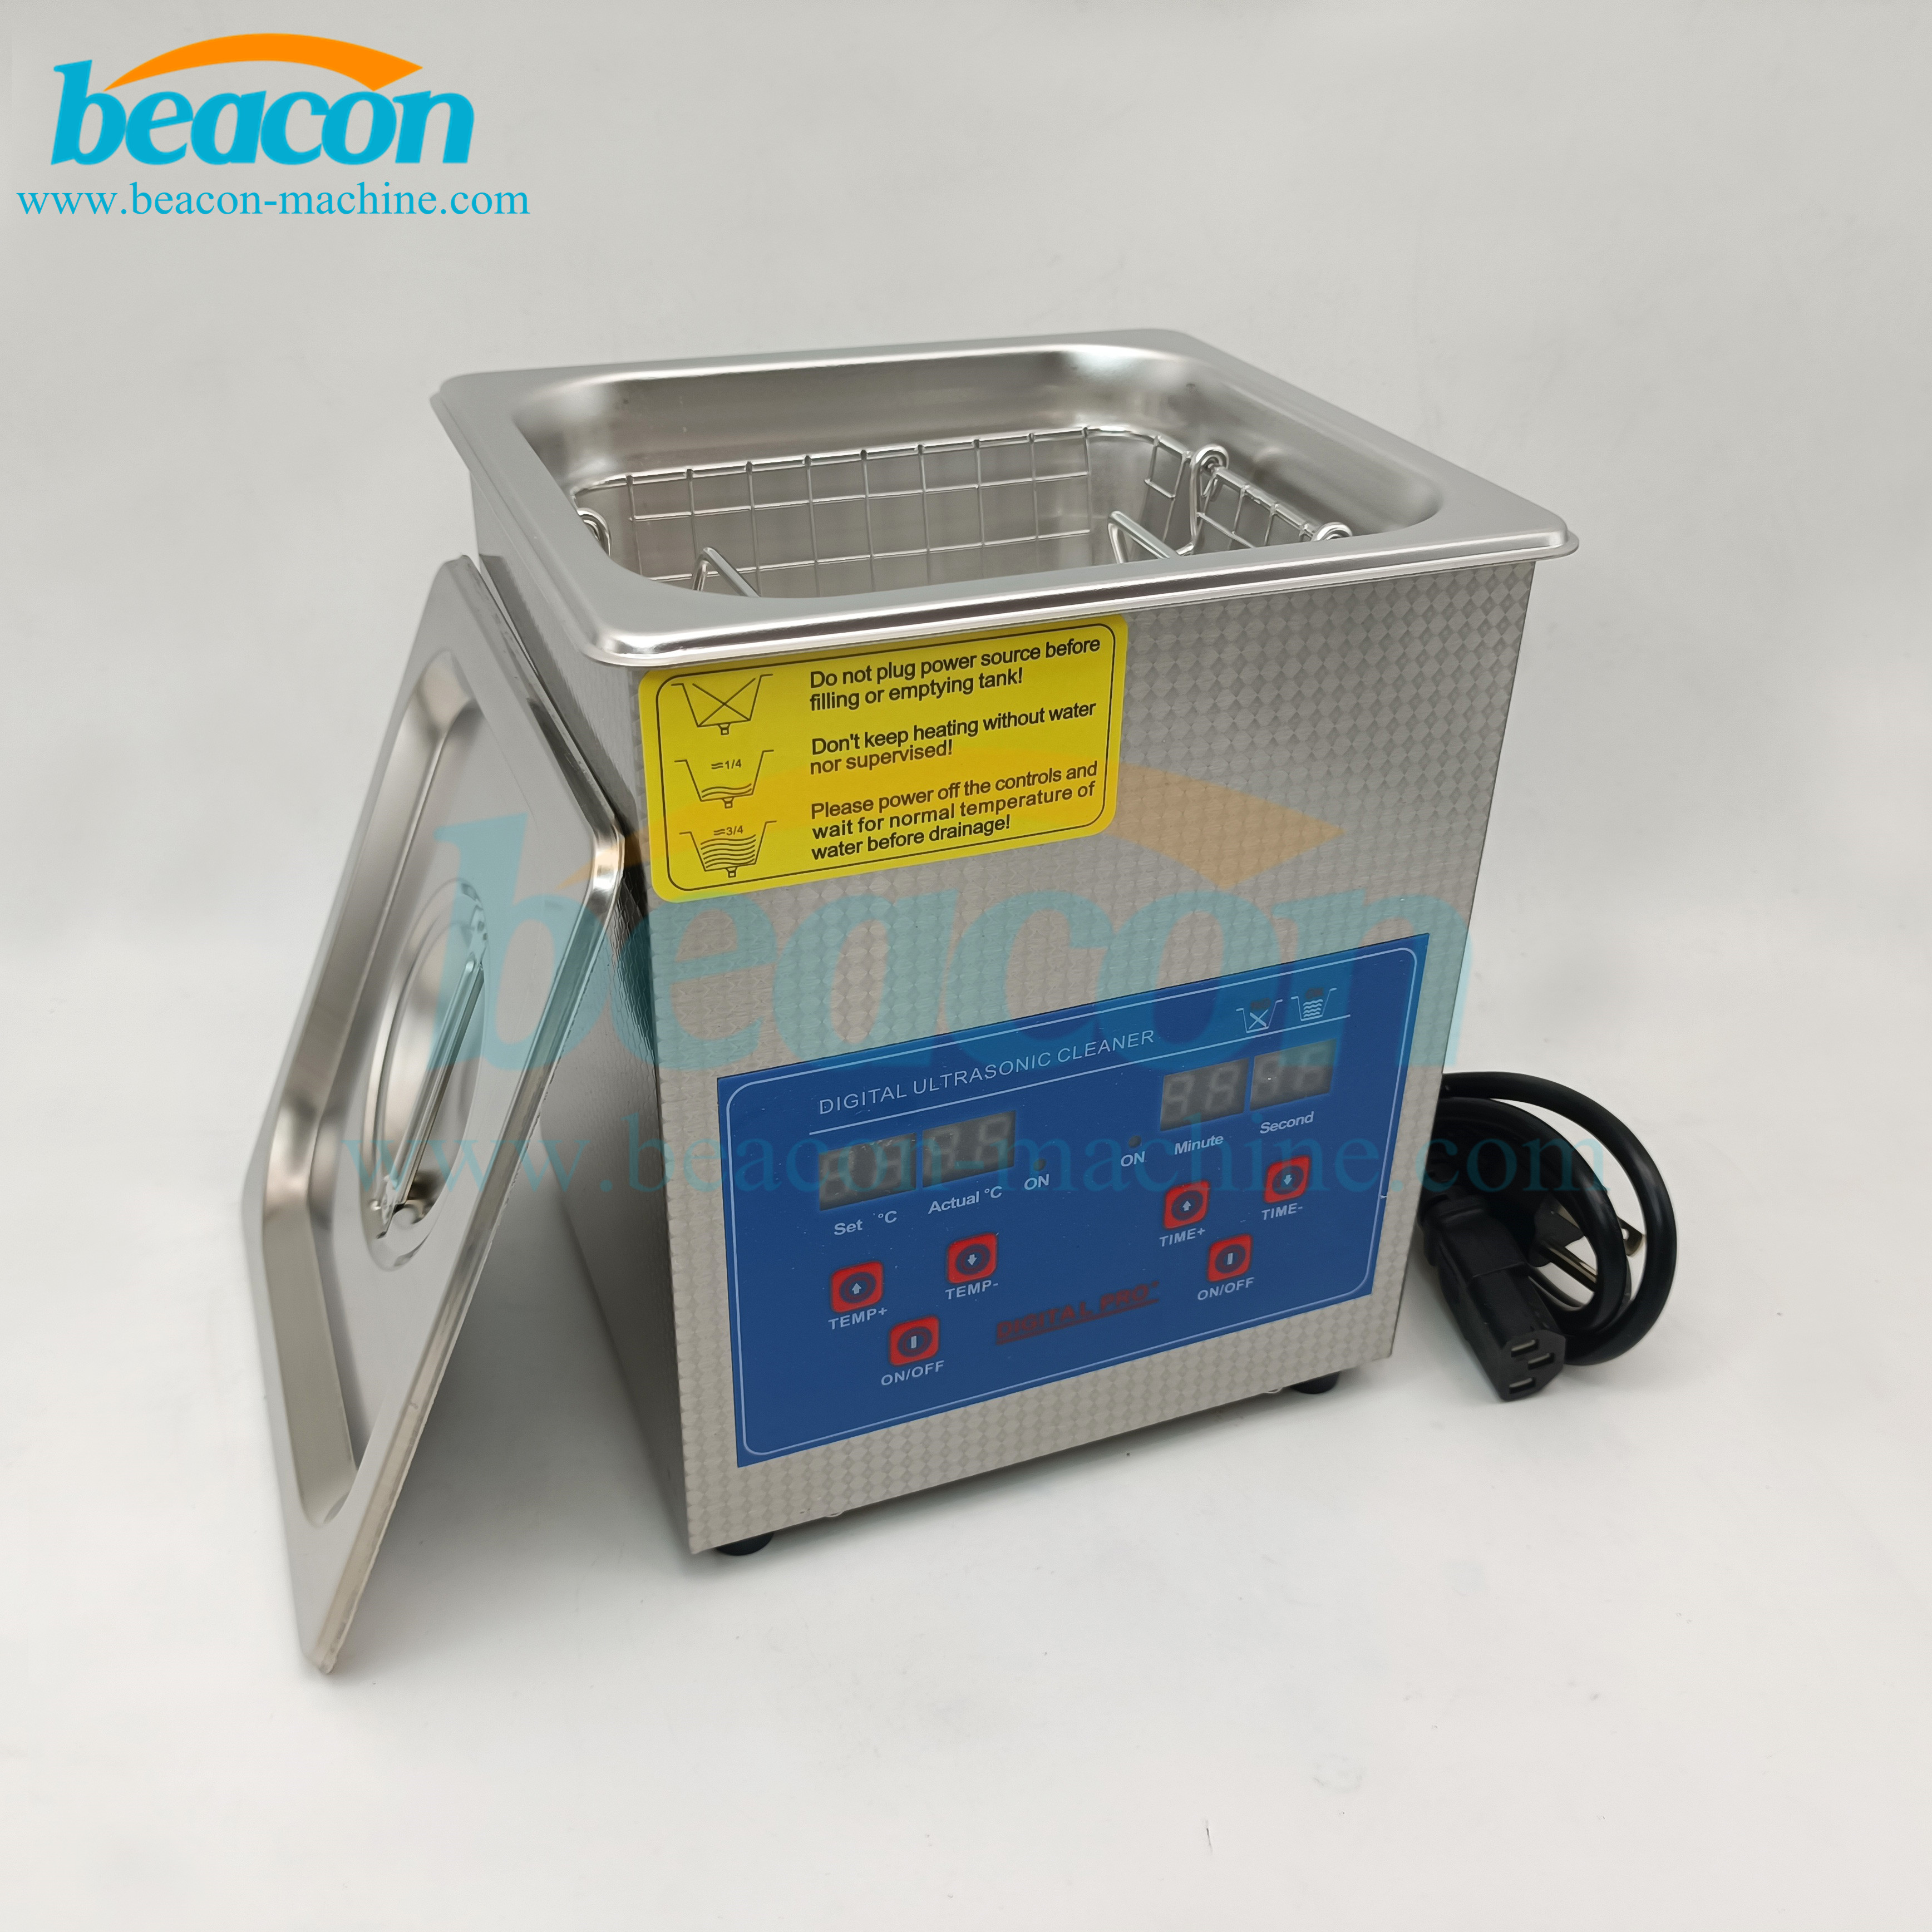 AC:110V/60Hz/220V/50Hz 1.3l Ultrasonic cleaning machine